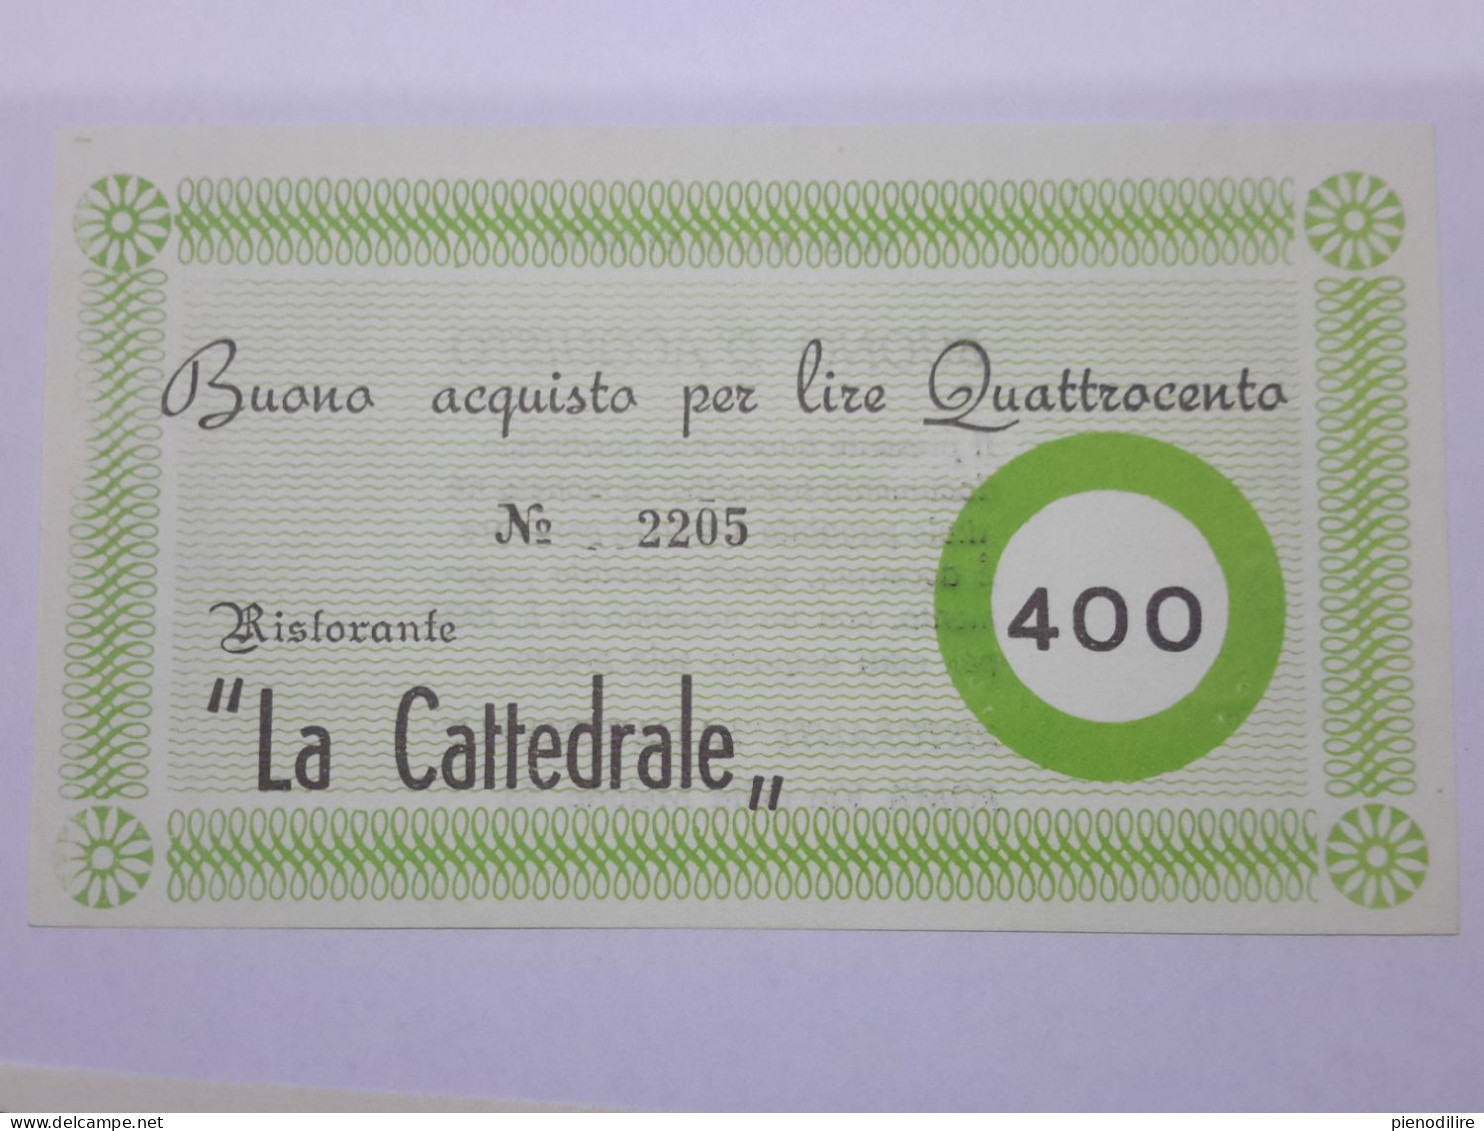 LOTTO 4Pz. 100 200 300 400 LIRE BUONI ACQUISTO RISTORANTE LA CATTEDRALE ROMA VALIDO FINO AL 31.12.1976 (A.4) - [10] Cheques En Mini-cheques